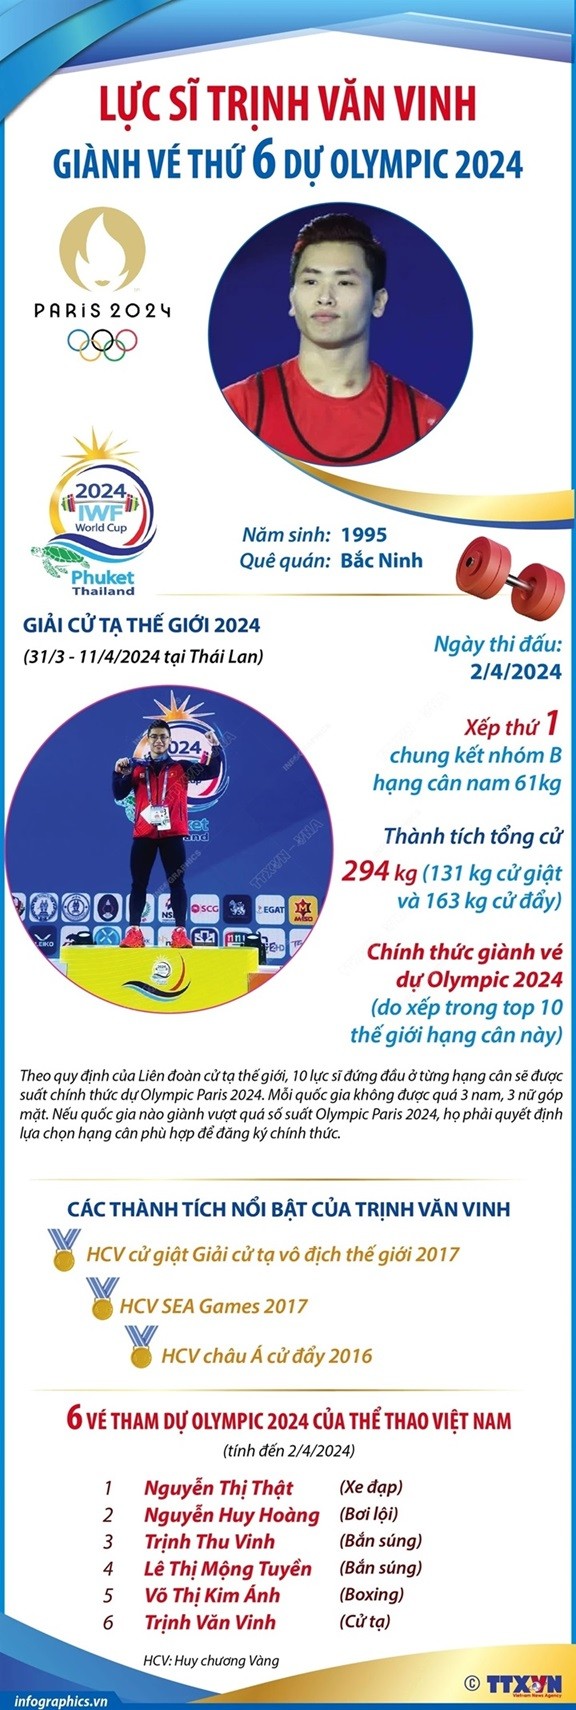 Olympic Paris 2024: Thông tin, thành tích đô cử đội tuyển cử tạ Việt Nam Trịnh Văn Vinh